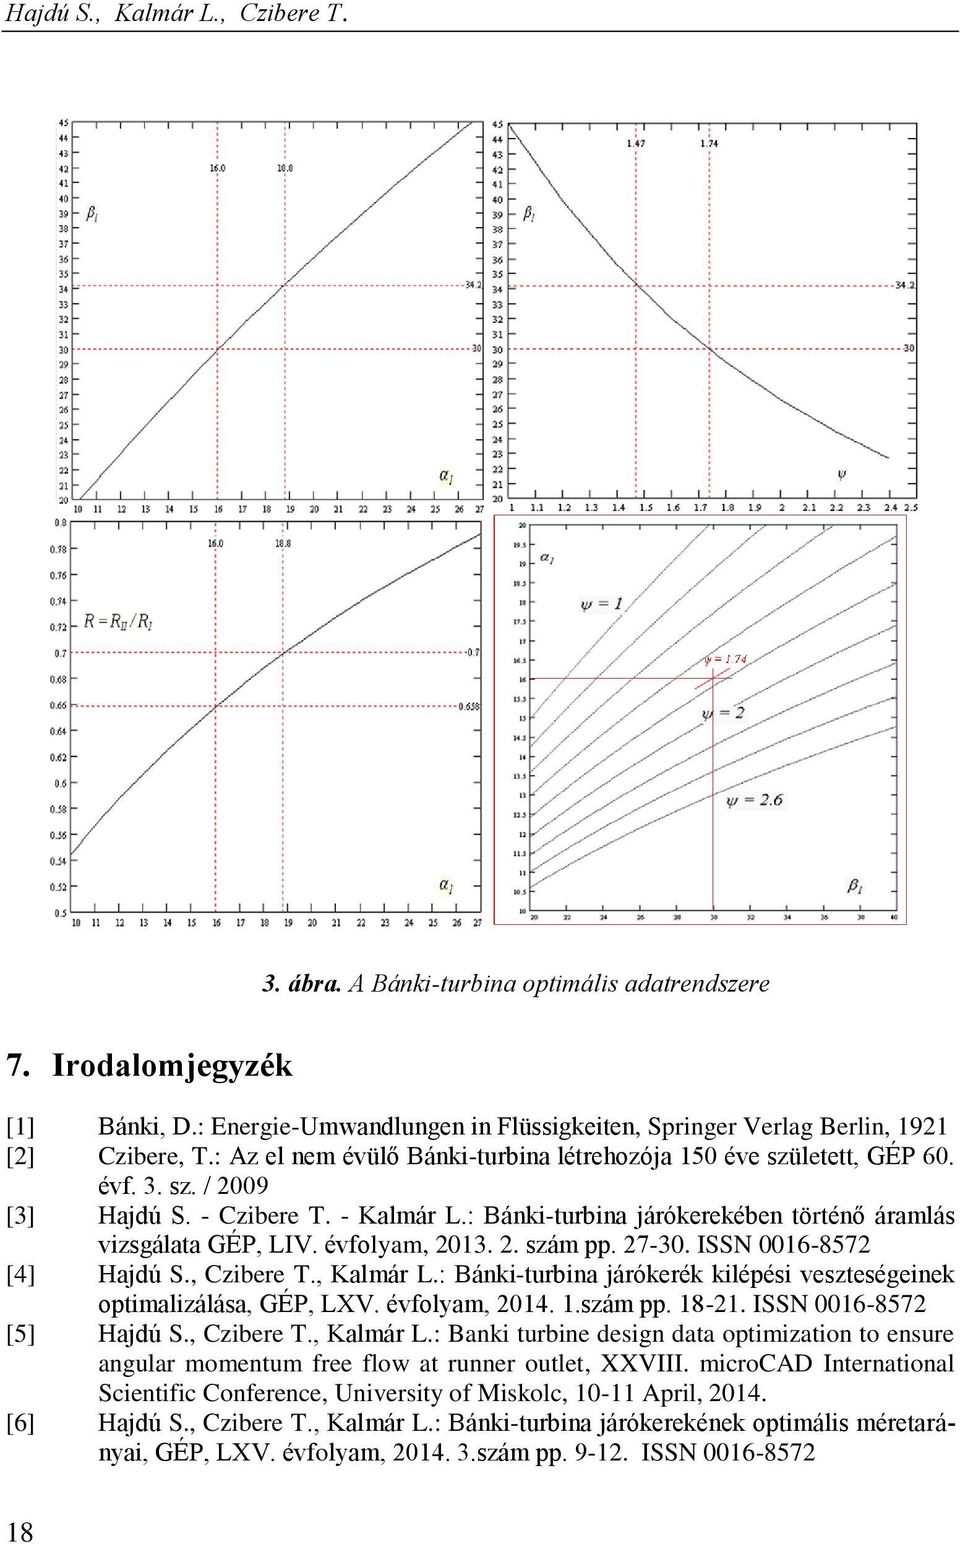 évfolyam, 2013. 2. szám pp. 27-30. ISSN 0016-8572 [4] Hajdú S., Czibere T., Kalmár L.: Bánki-turbina járókerék kilépési veszteségeinek optimalizálása, GÉP, LXV. évfolyam, 2014. 1.szám pp. 18-21.